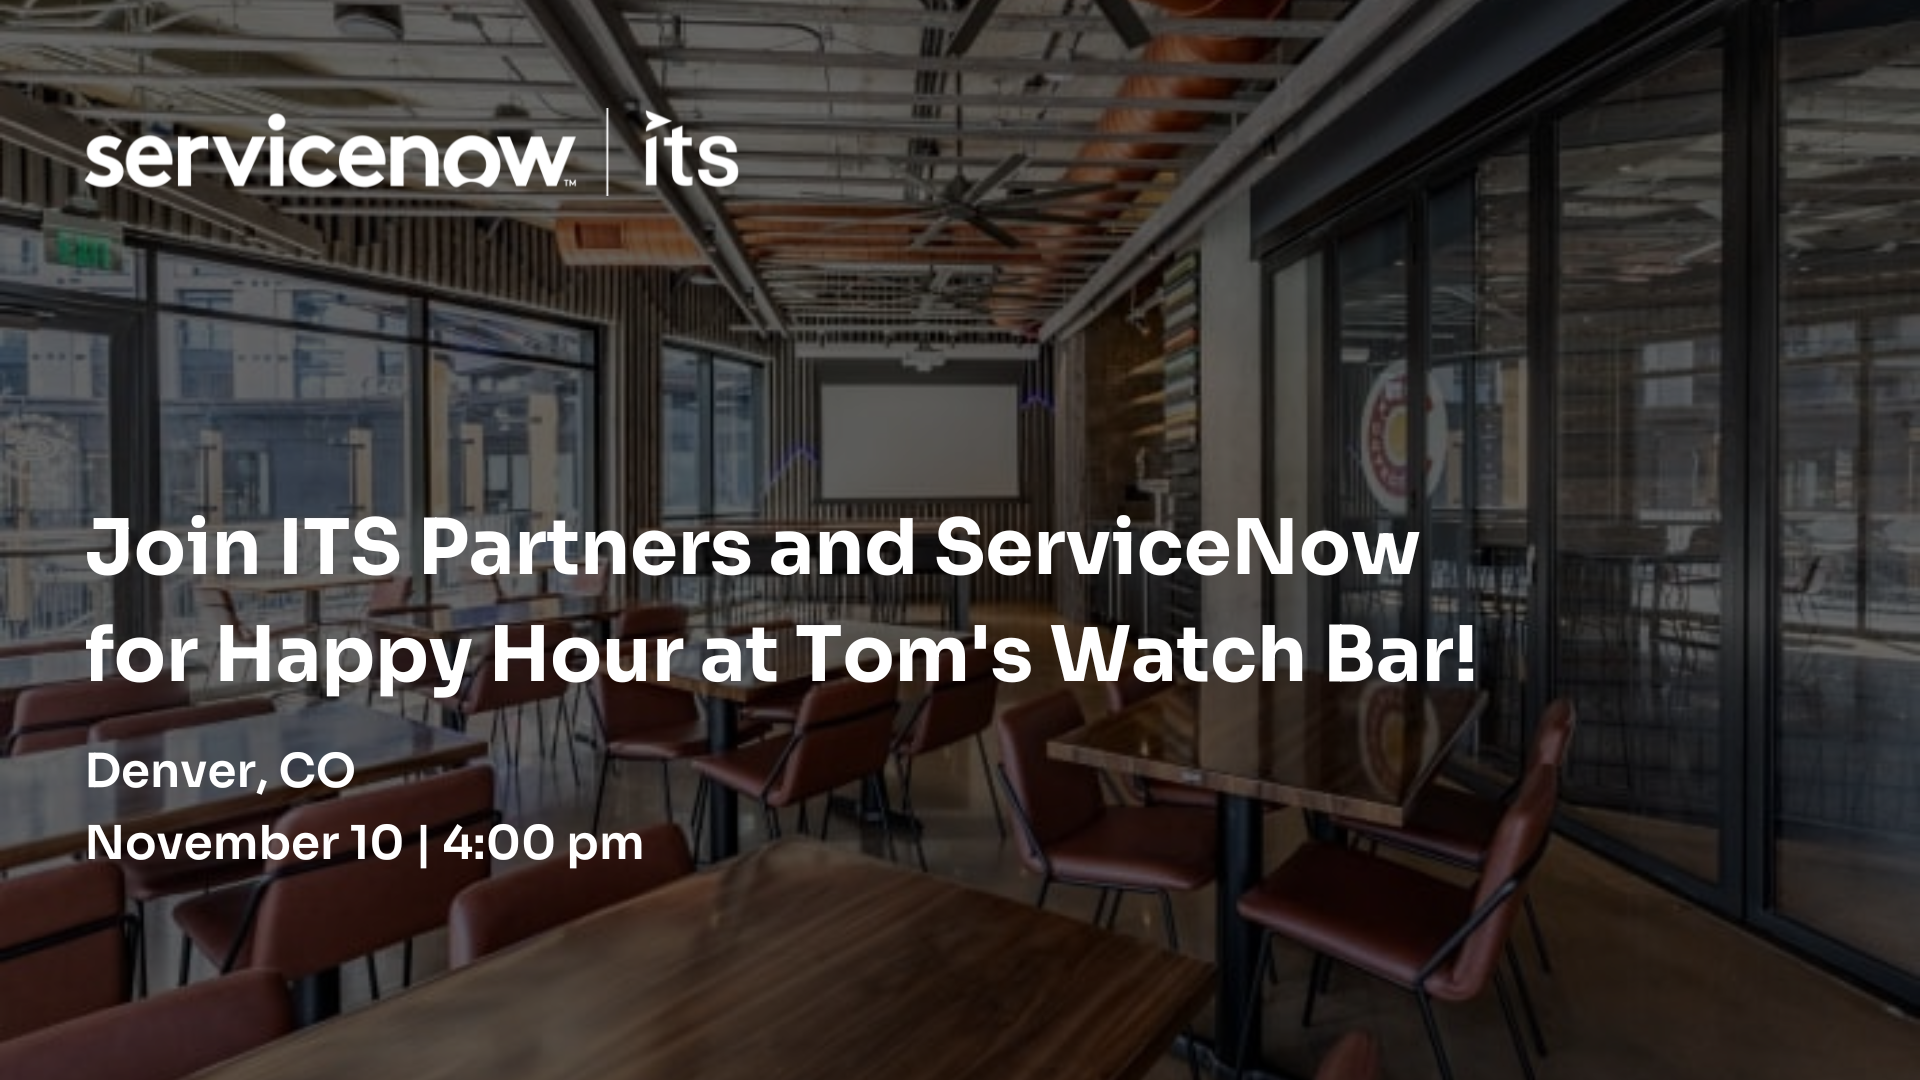 Toms Watch Bar